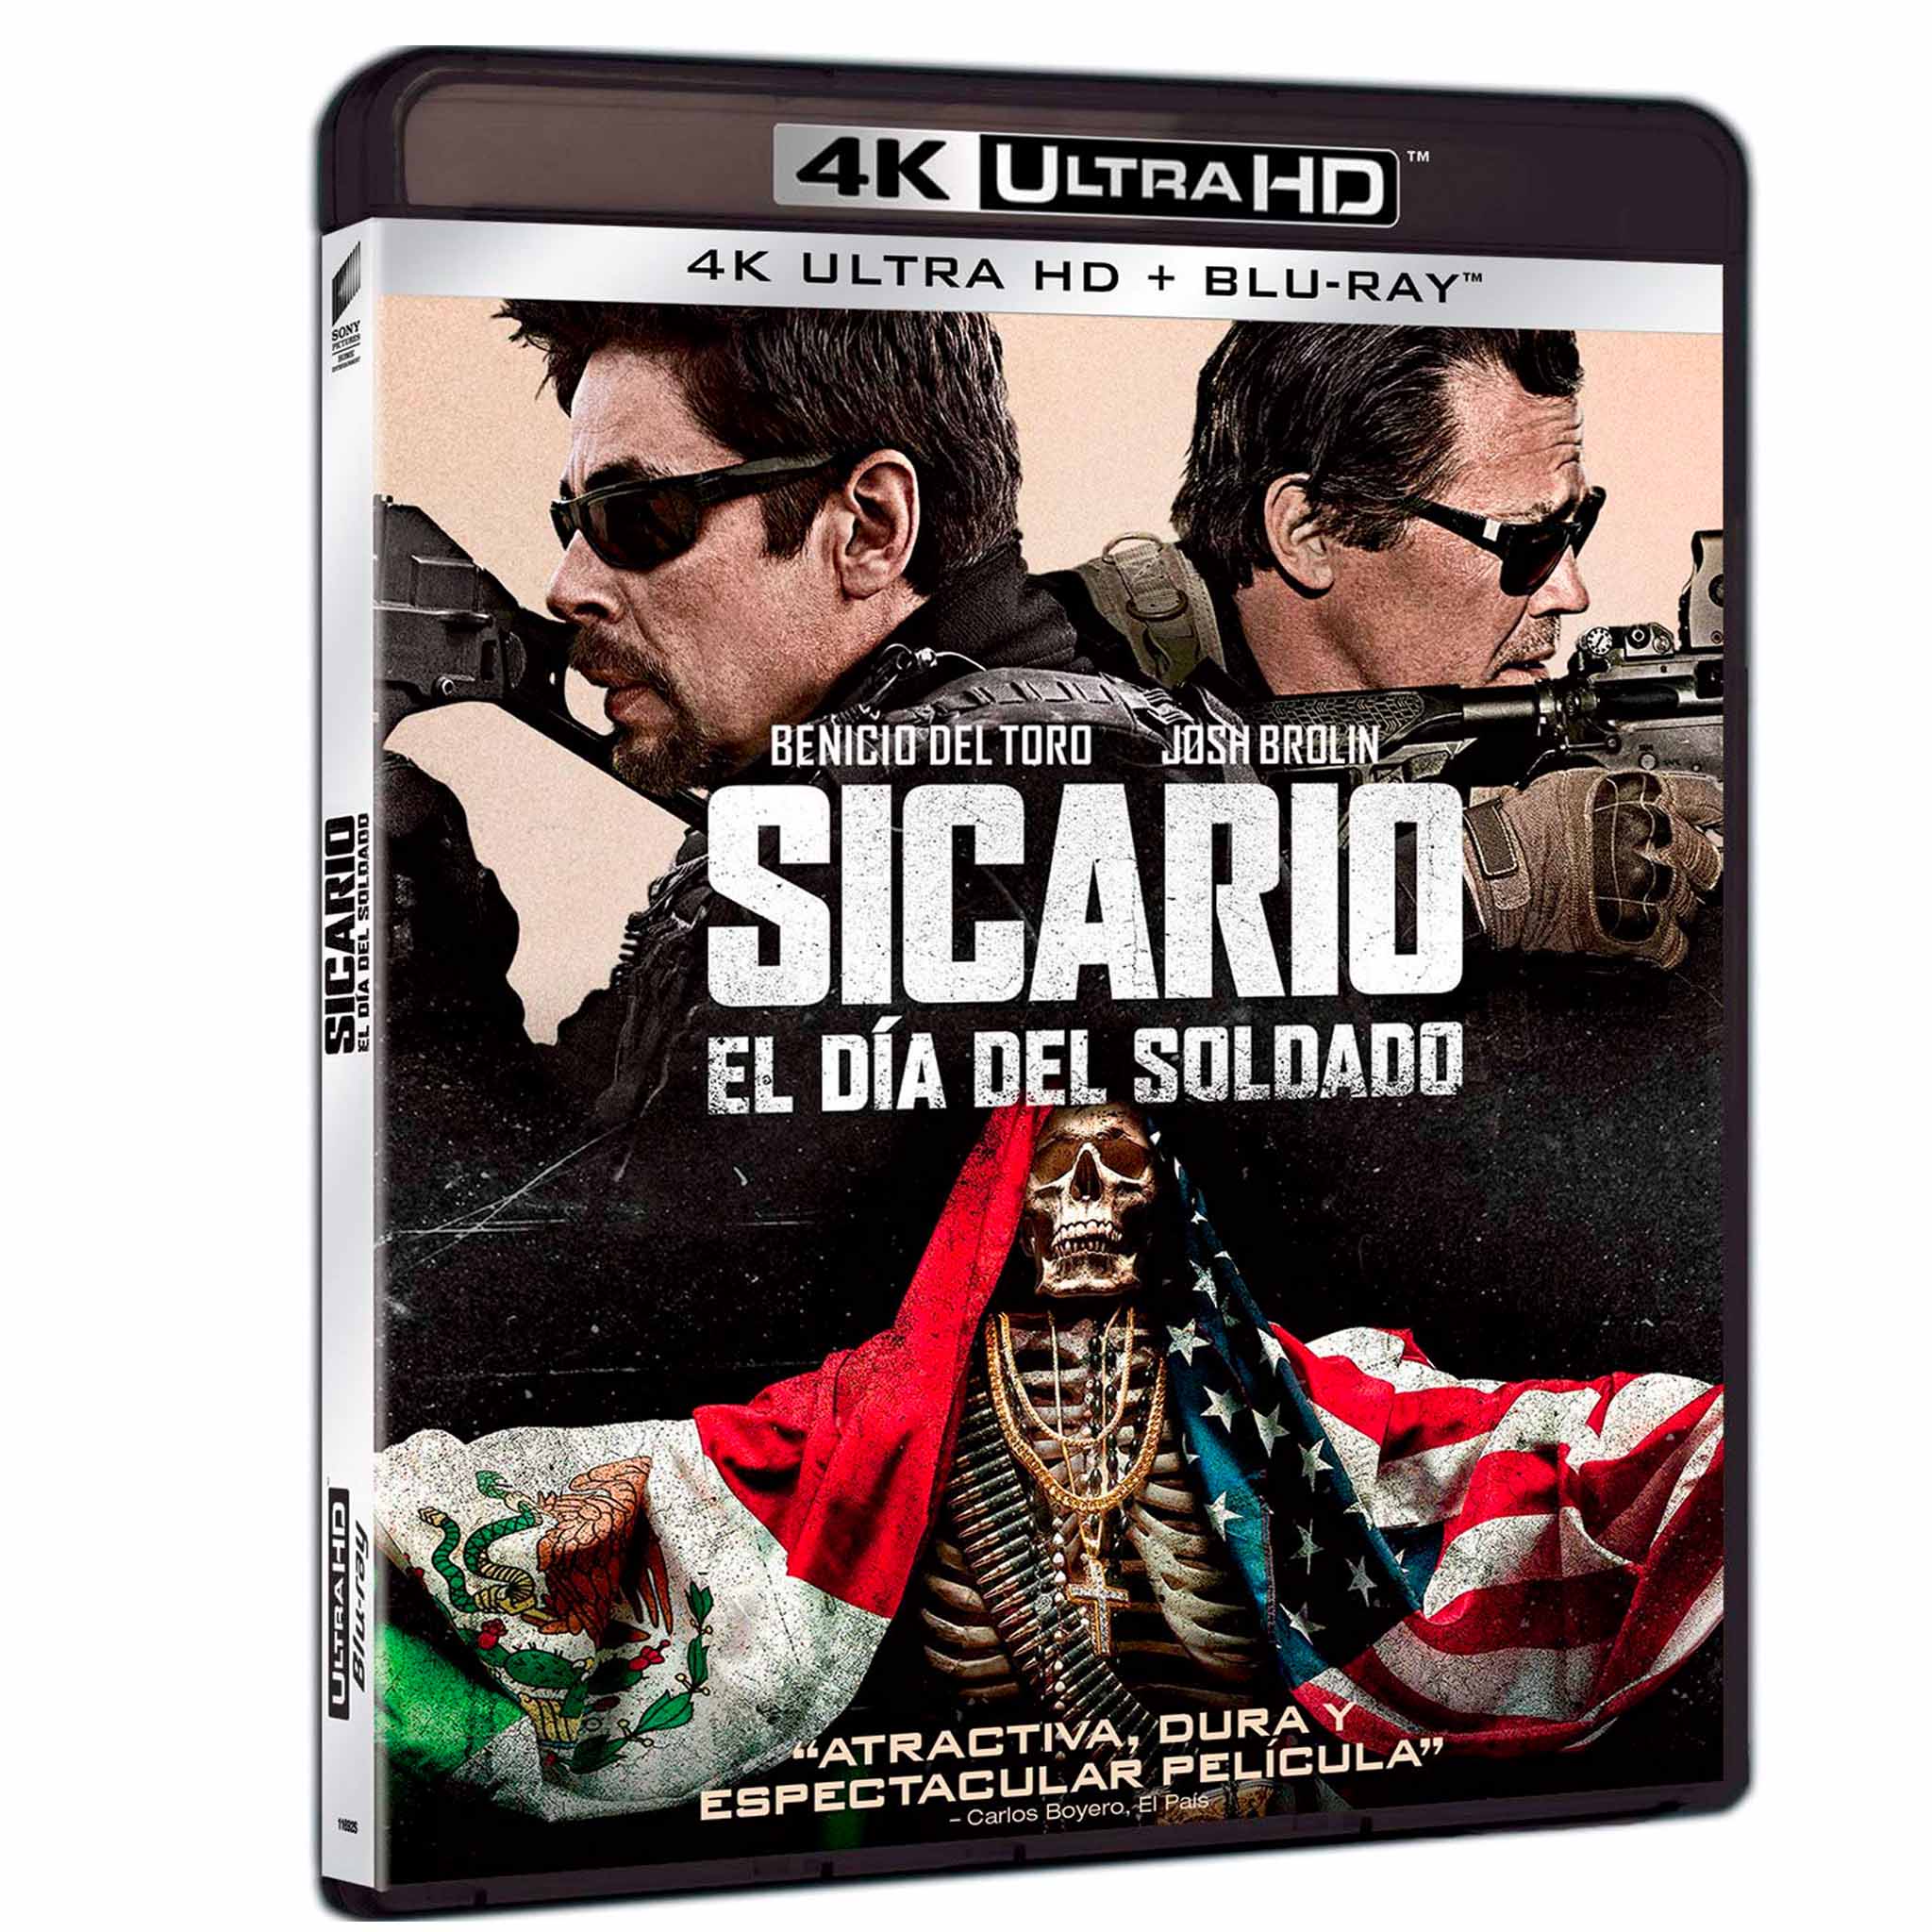 Sicario: El Día del Soldado 4K UHD + Blu-Ray - Universe of Entertainment